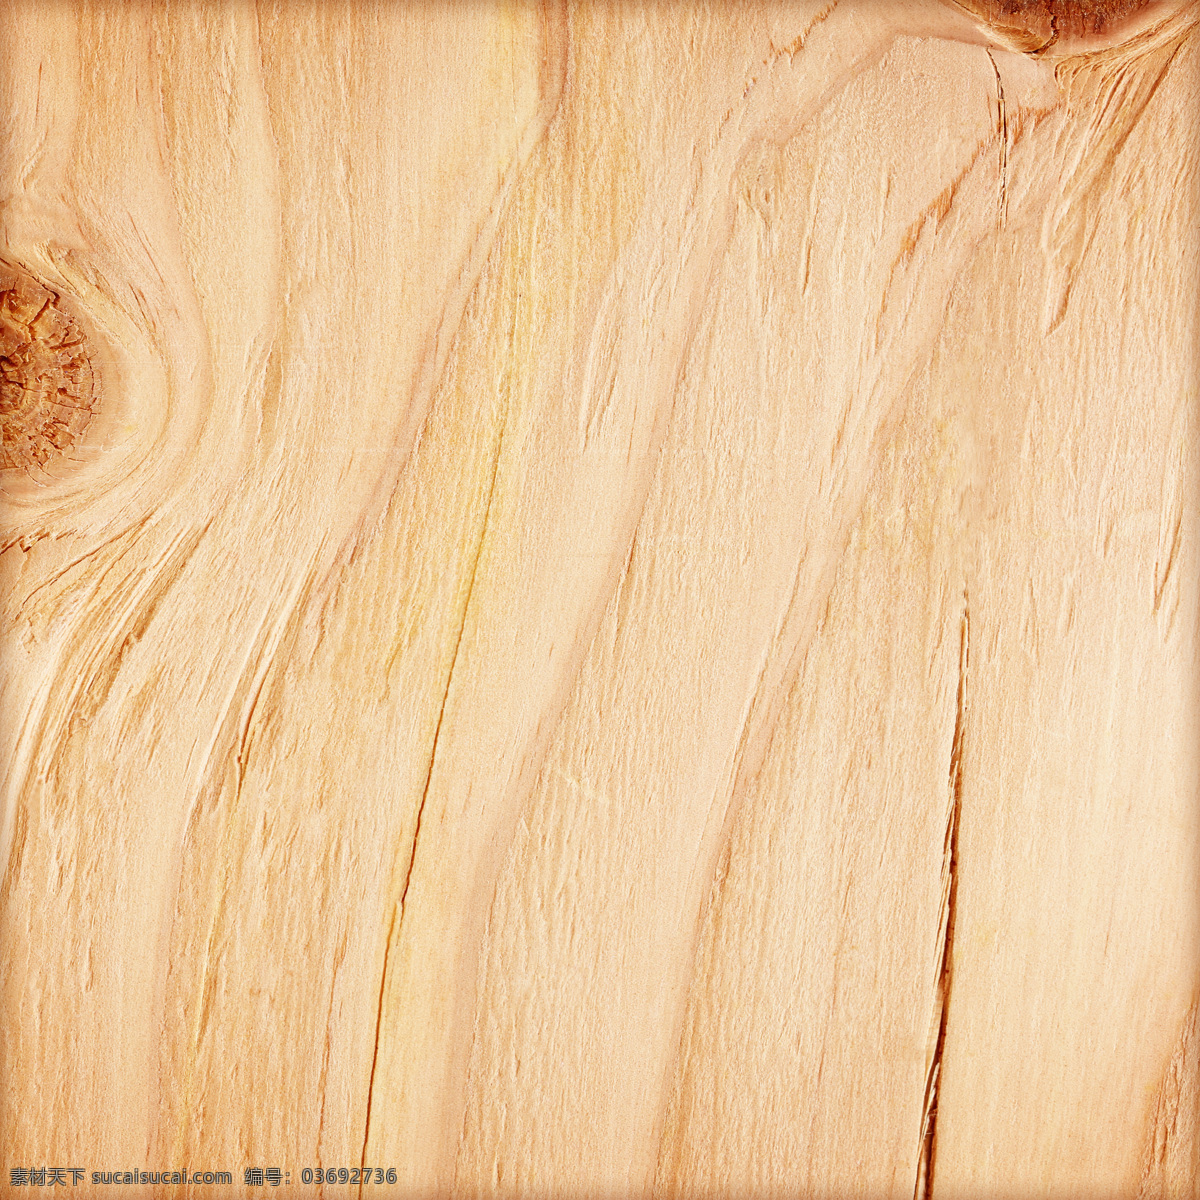 木纹背景 木板背景 木板材质 贴图 木质纹理 背景底纹 木板 木纹 背景 高清 木地板 地板 木头 黄色